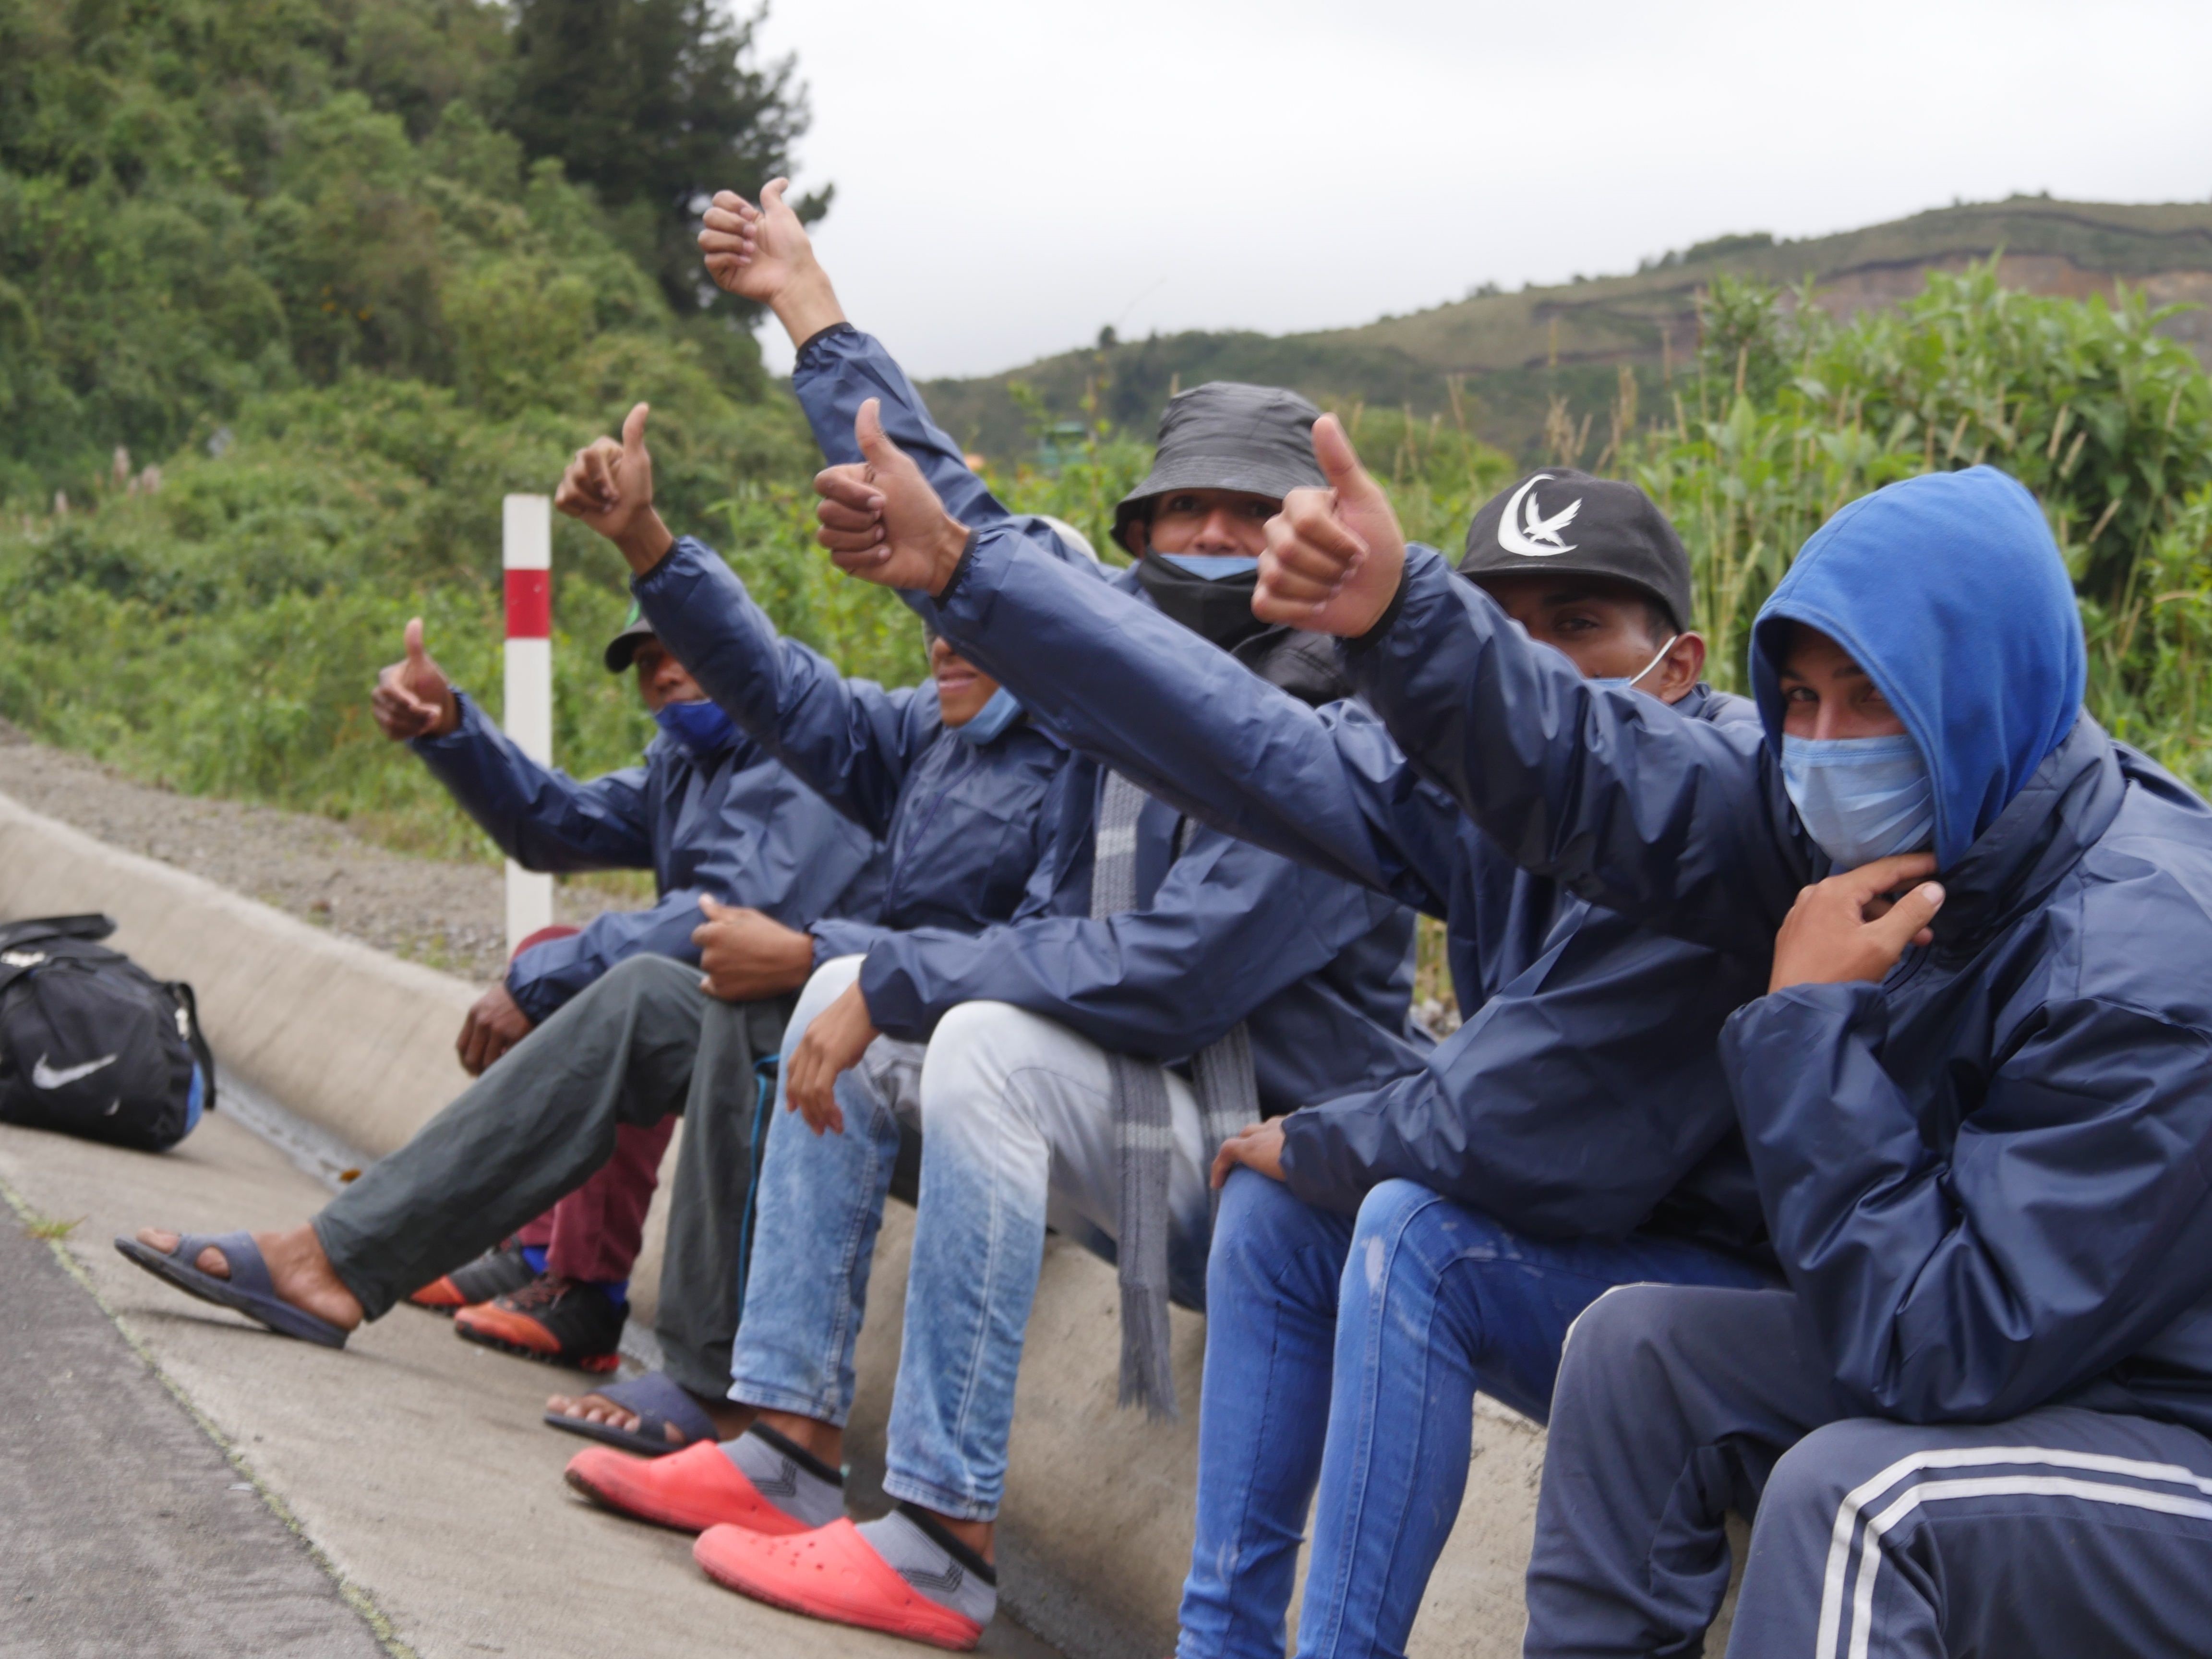 Grupos de migrantes venezolanos descansan junto a una carretera ayer, en la región de Tulcán (Ecuador). EFE/Xavier Montalvo
